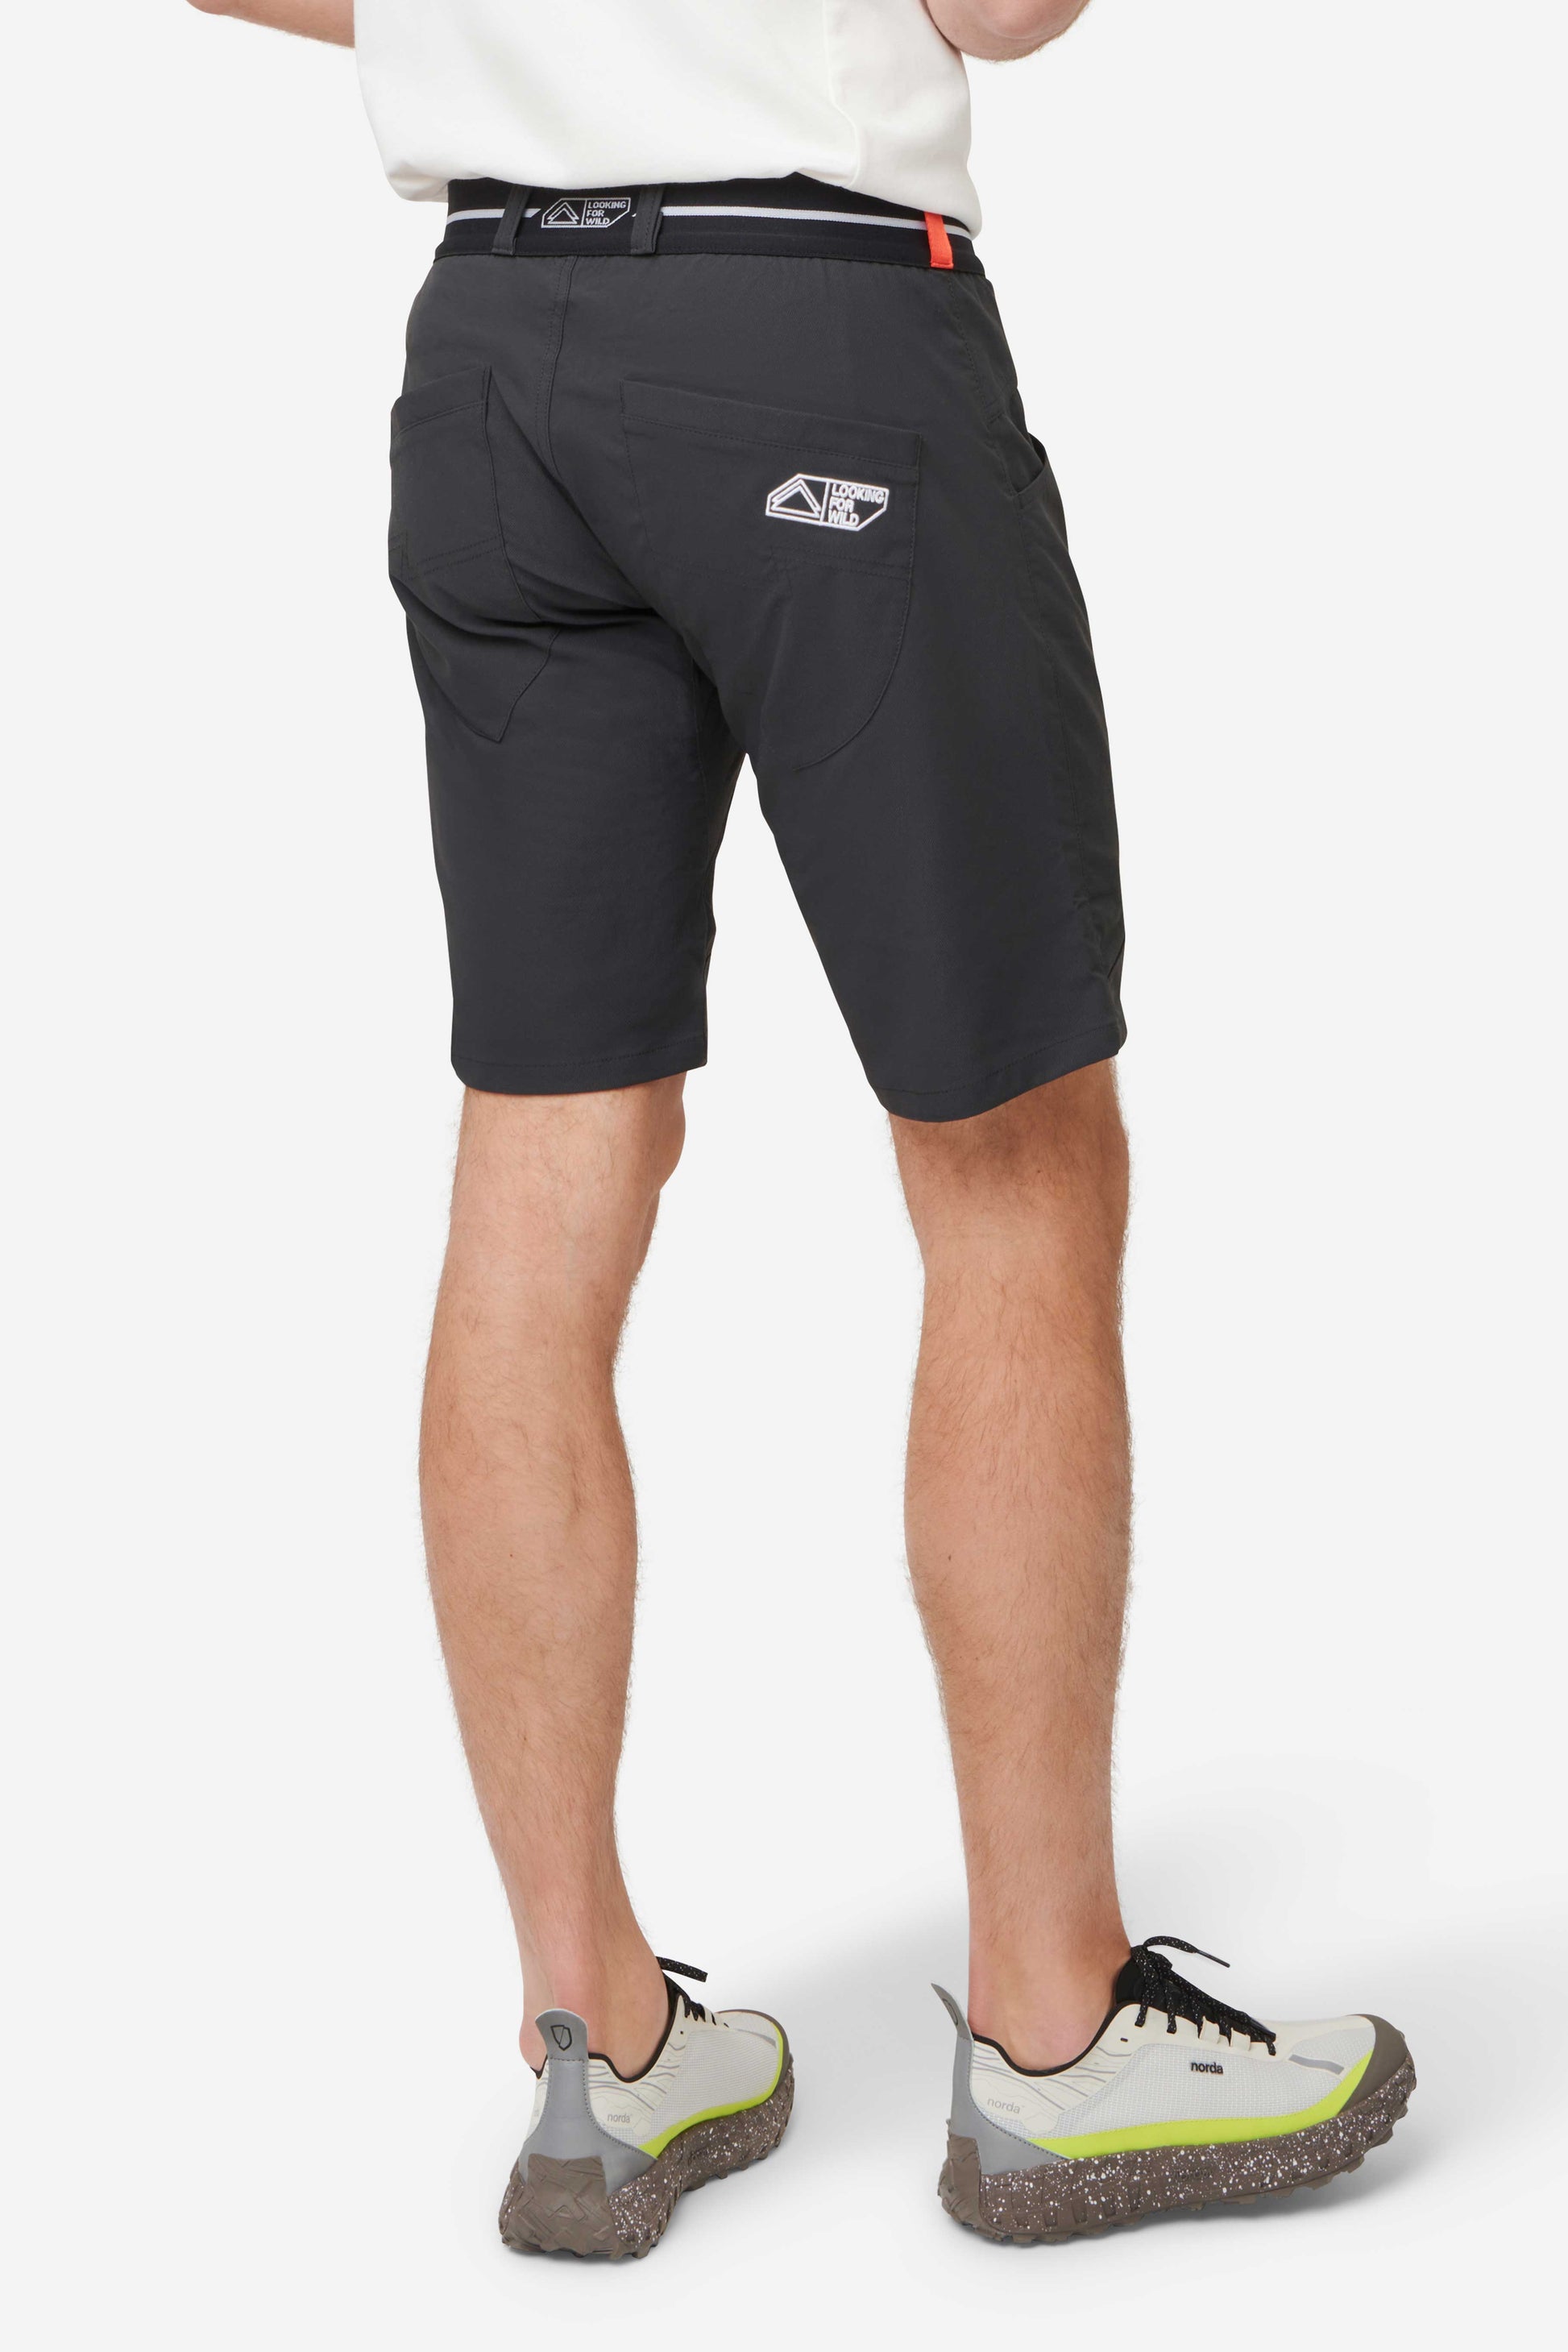 Pro Model Men's Shorts PIRATE BLACK